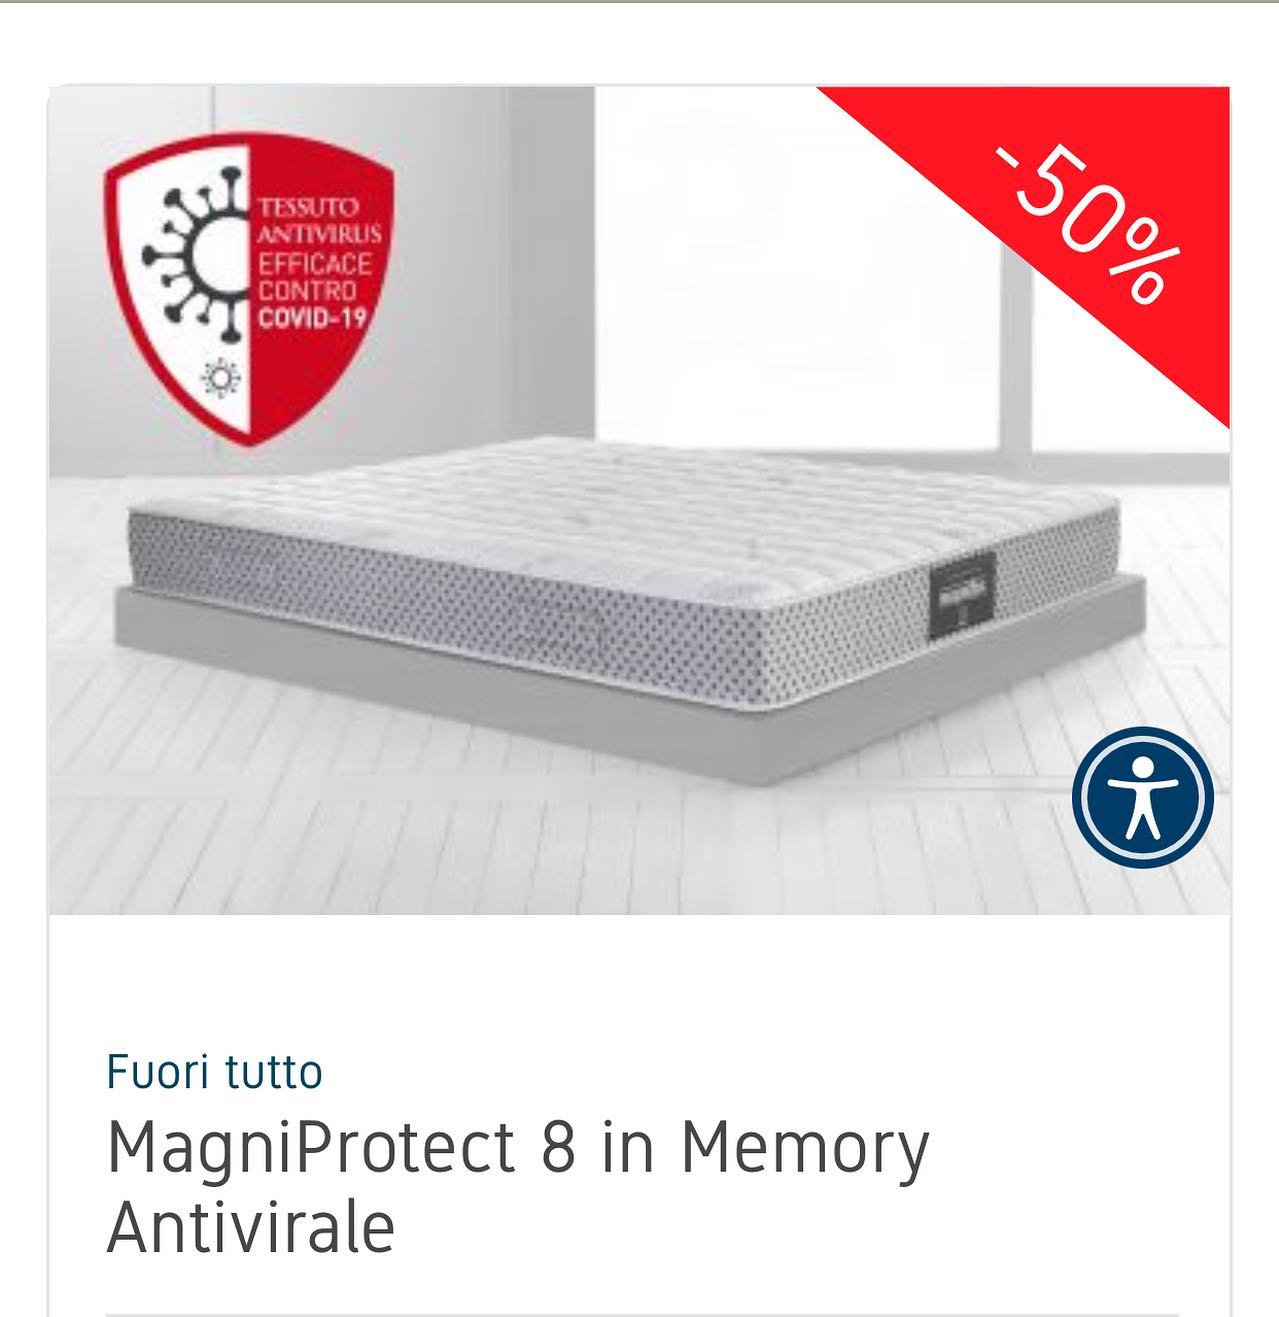 #magniprotect8 #promo #fineserie‼️ 
Esclusivo materasso con tessuto MagniProtect che fornisce una protezione efficace contro virus e batteri ogni notte.